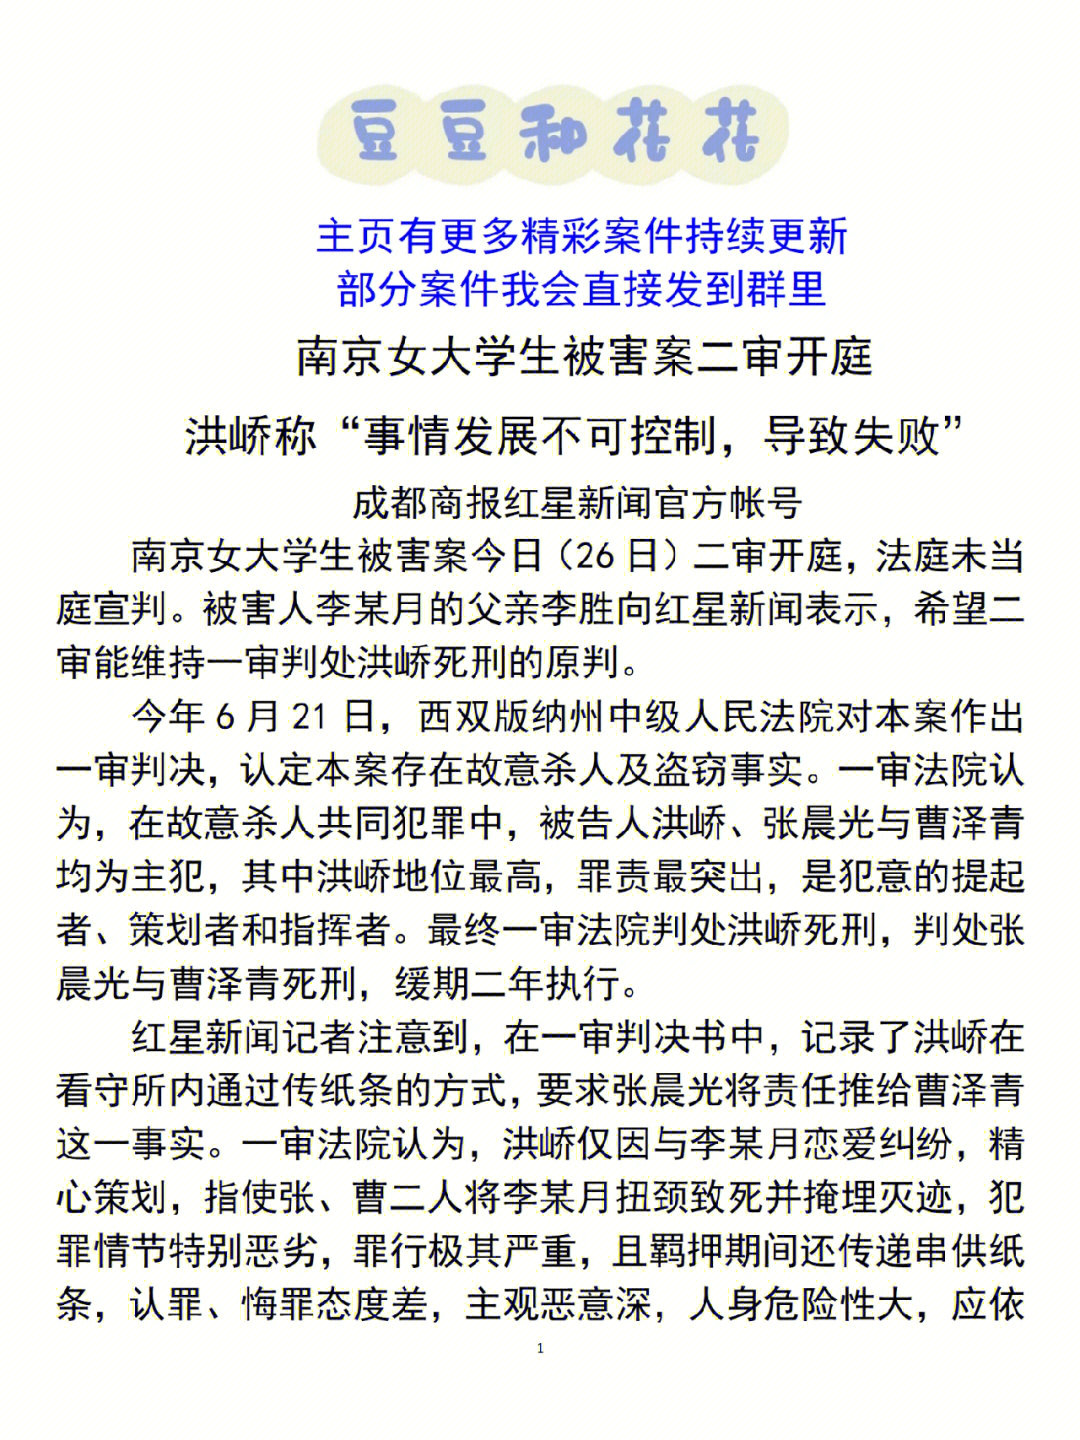 南京女大学生被害案二审开庭